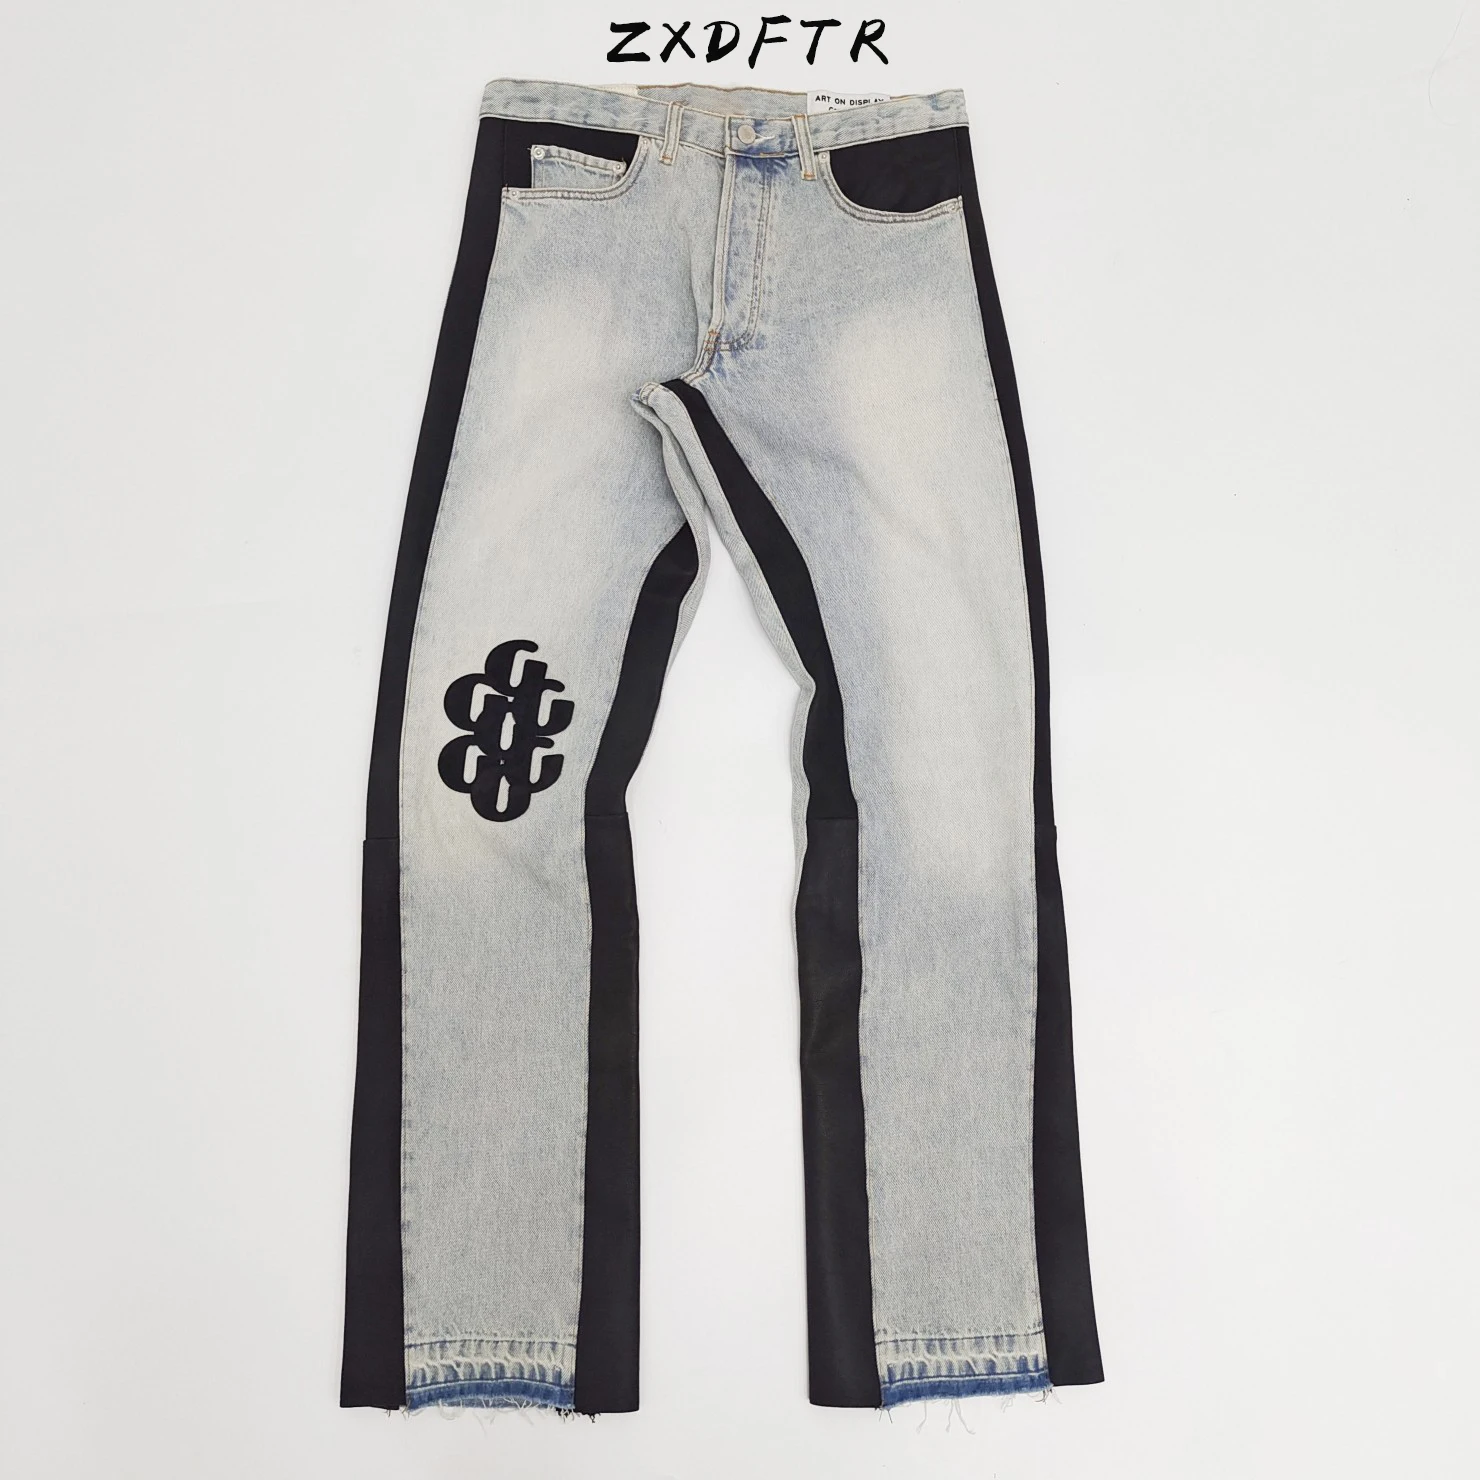 ZXDFTR GD Весна Лето Мужские повседневные винтажные джинсы в стиле Хип-хоп из натуральной кожи